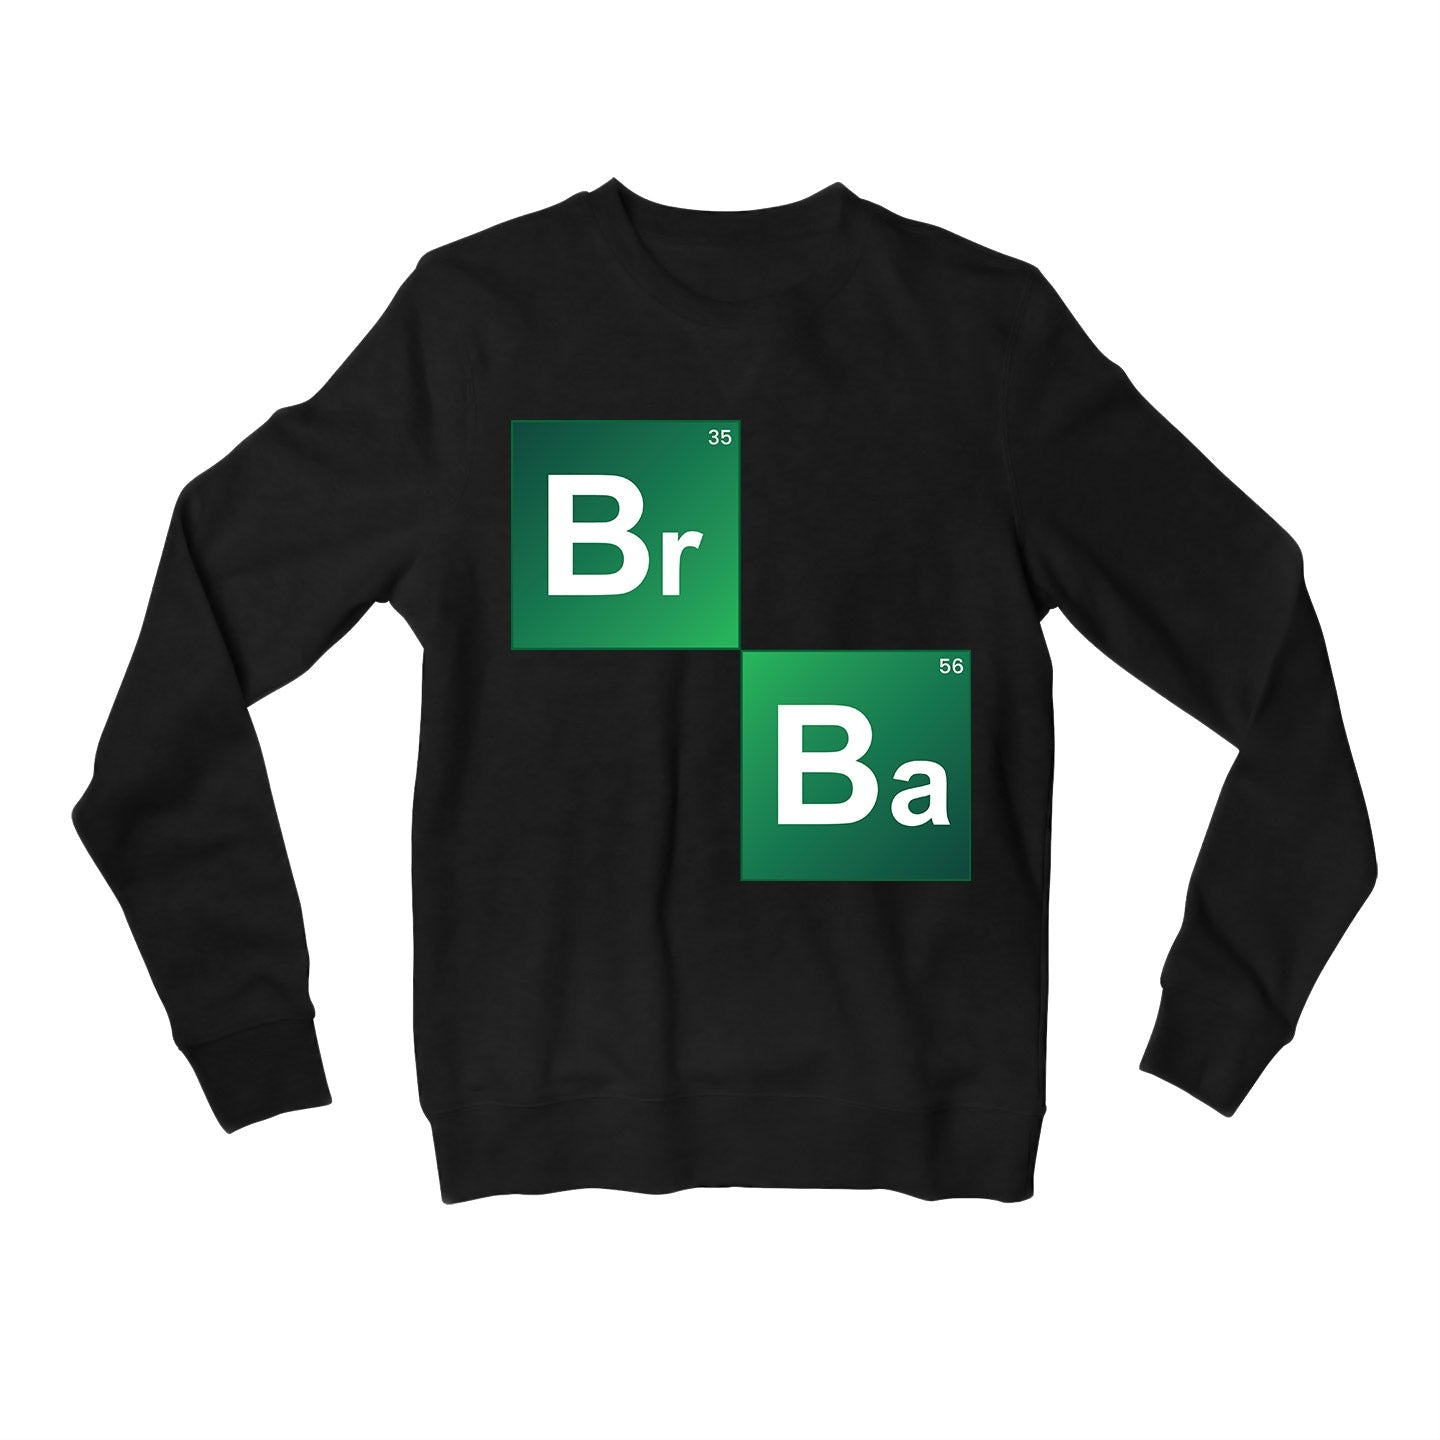 Breaking Bad Sweatshirt by The Banyan Tee TBT